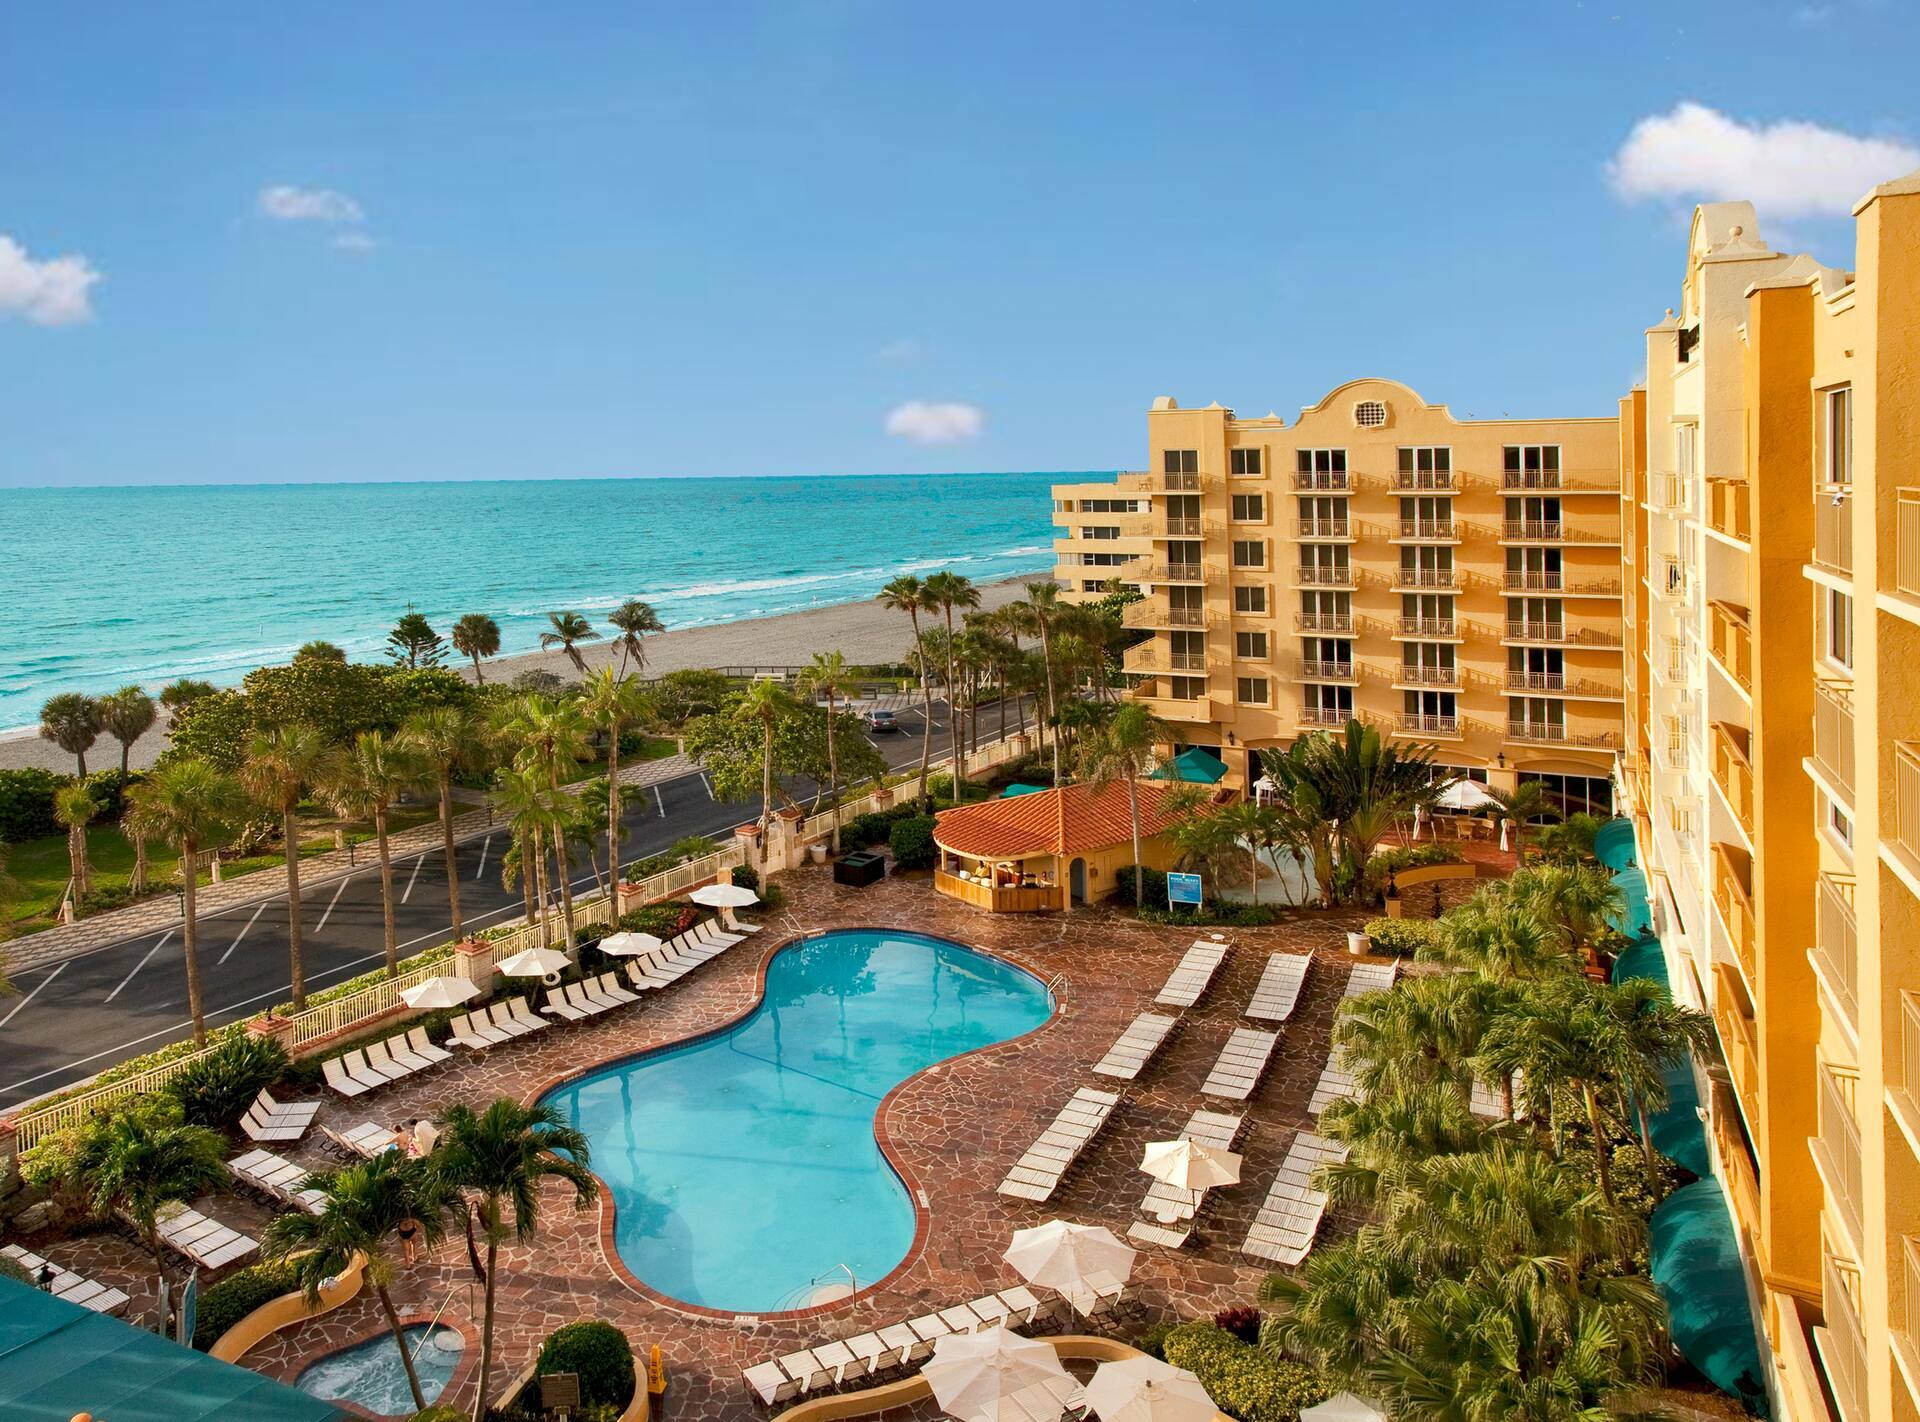 Photo of Embassy Suites by Hilton Deerfield Beach Resort & Spa, Deerfield Beach, FL